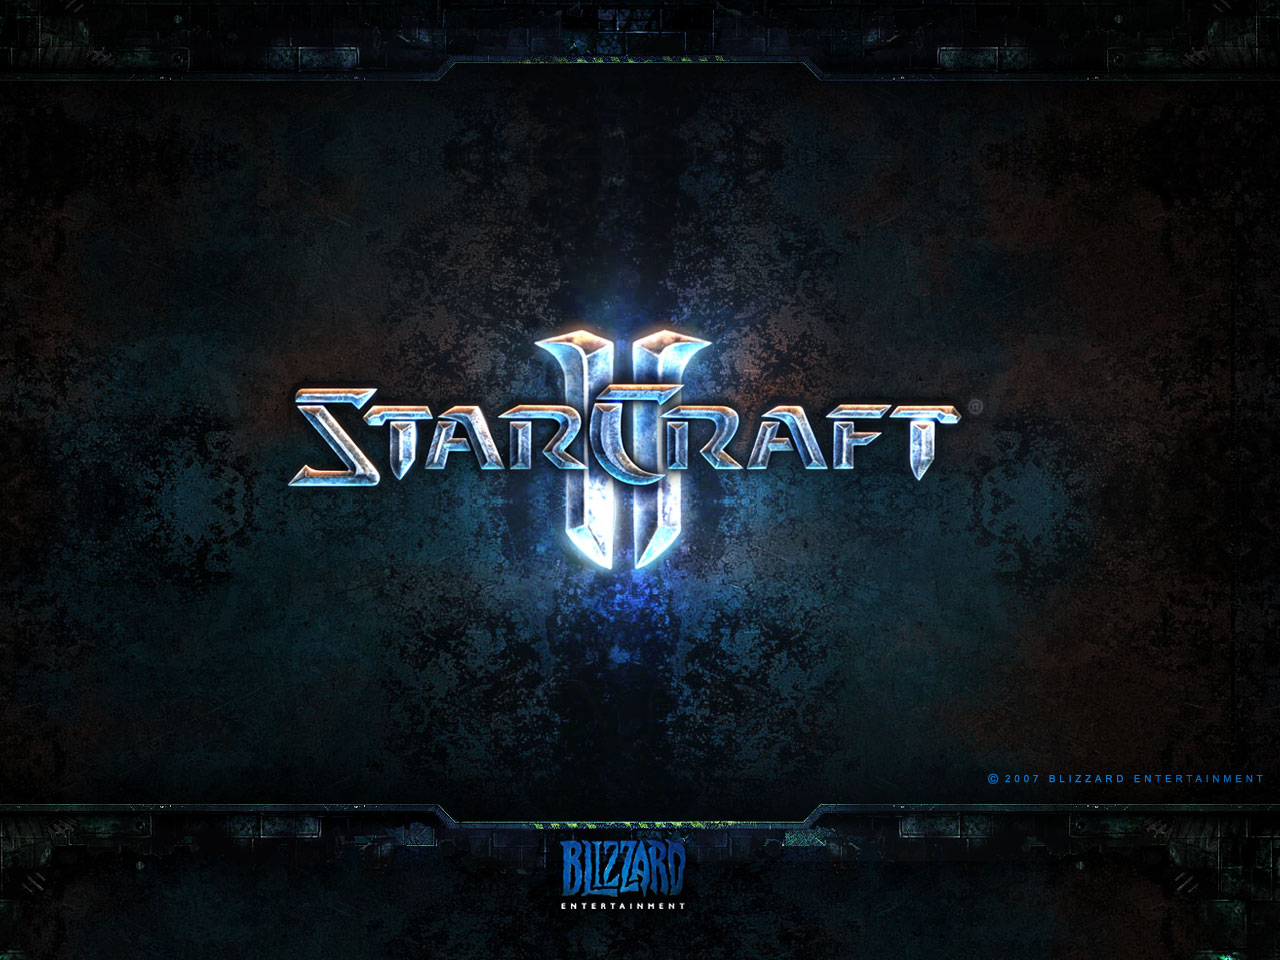 Starcraft 2 wallpaper - Wallpaper Bit